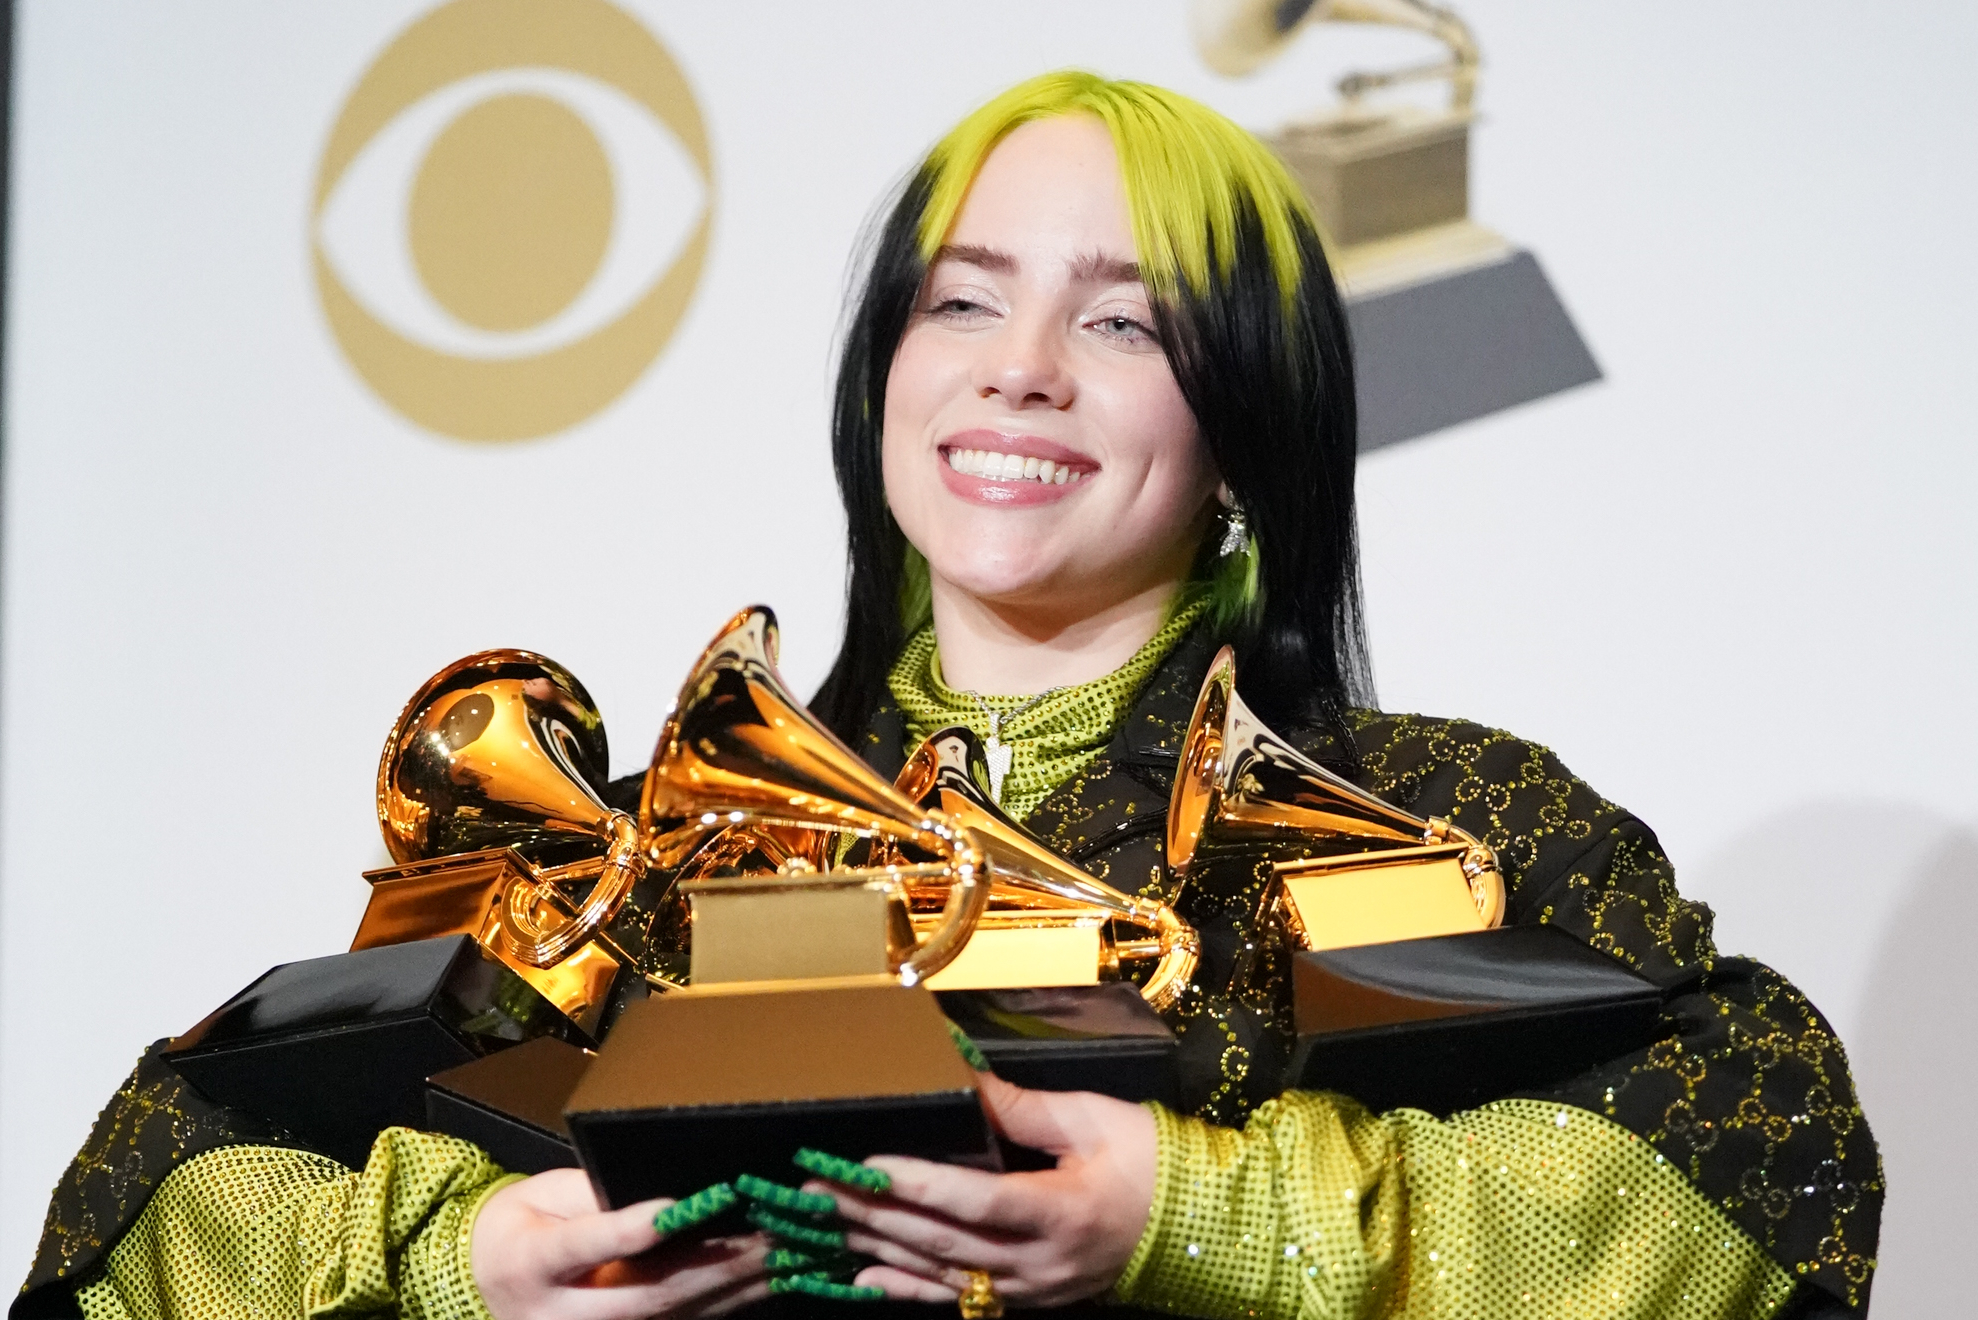 Billie Eilish with Grammys